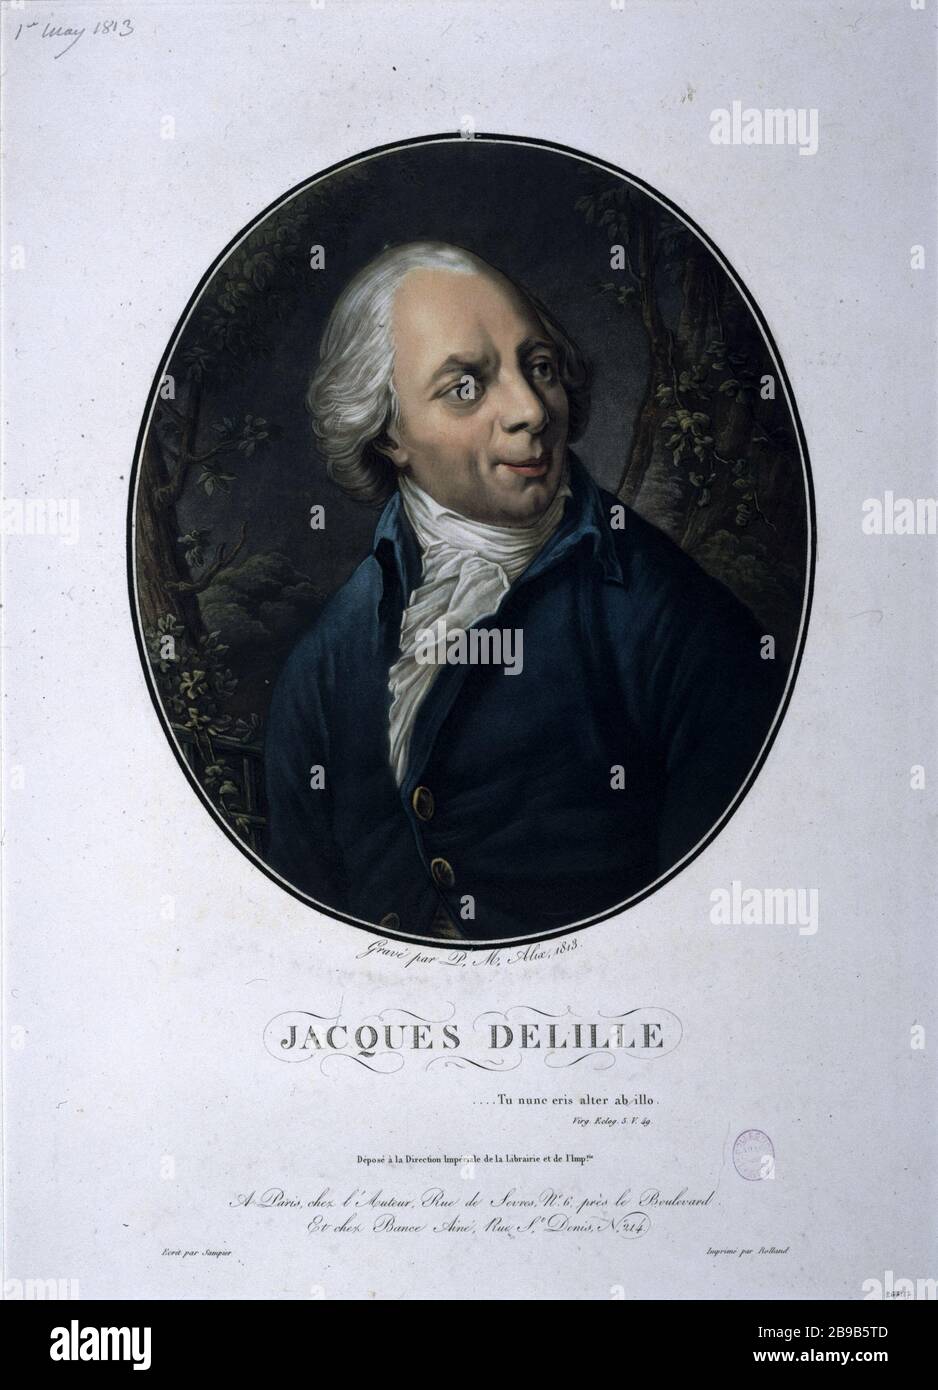 FATHER JACQUES DELILLE Pierre-Michel Alix (1762-1817). 'L'abbé Jacques Delille'. Gravure, 1813. Paris, musée Carnavalet. Stock Photo